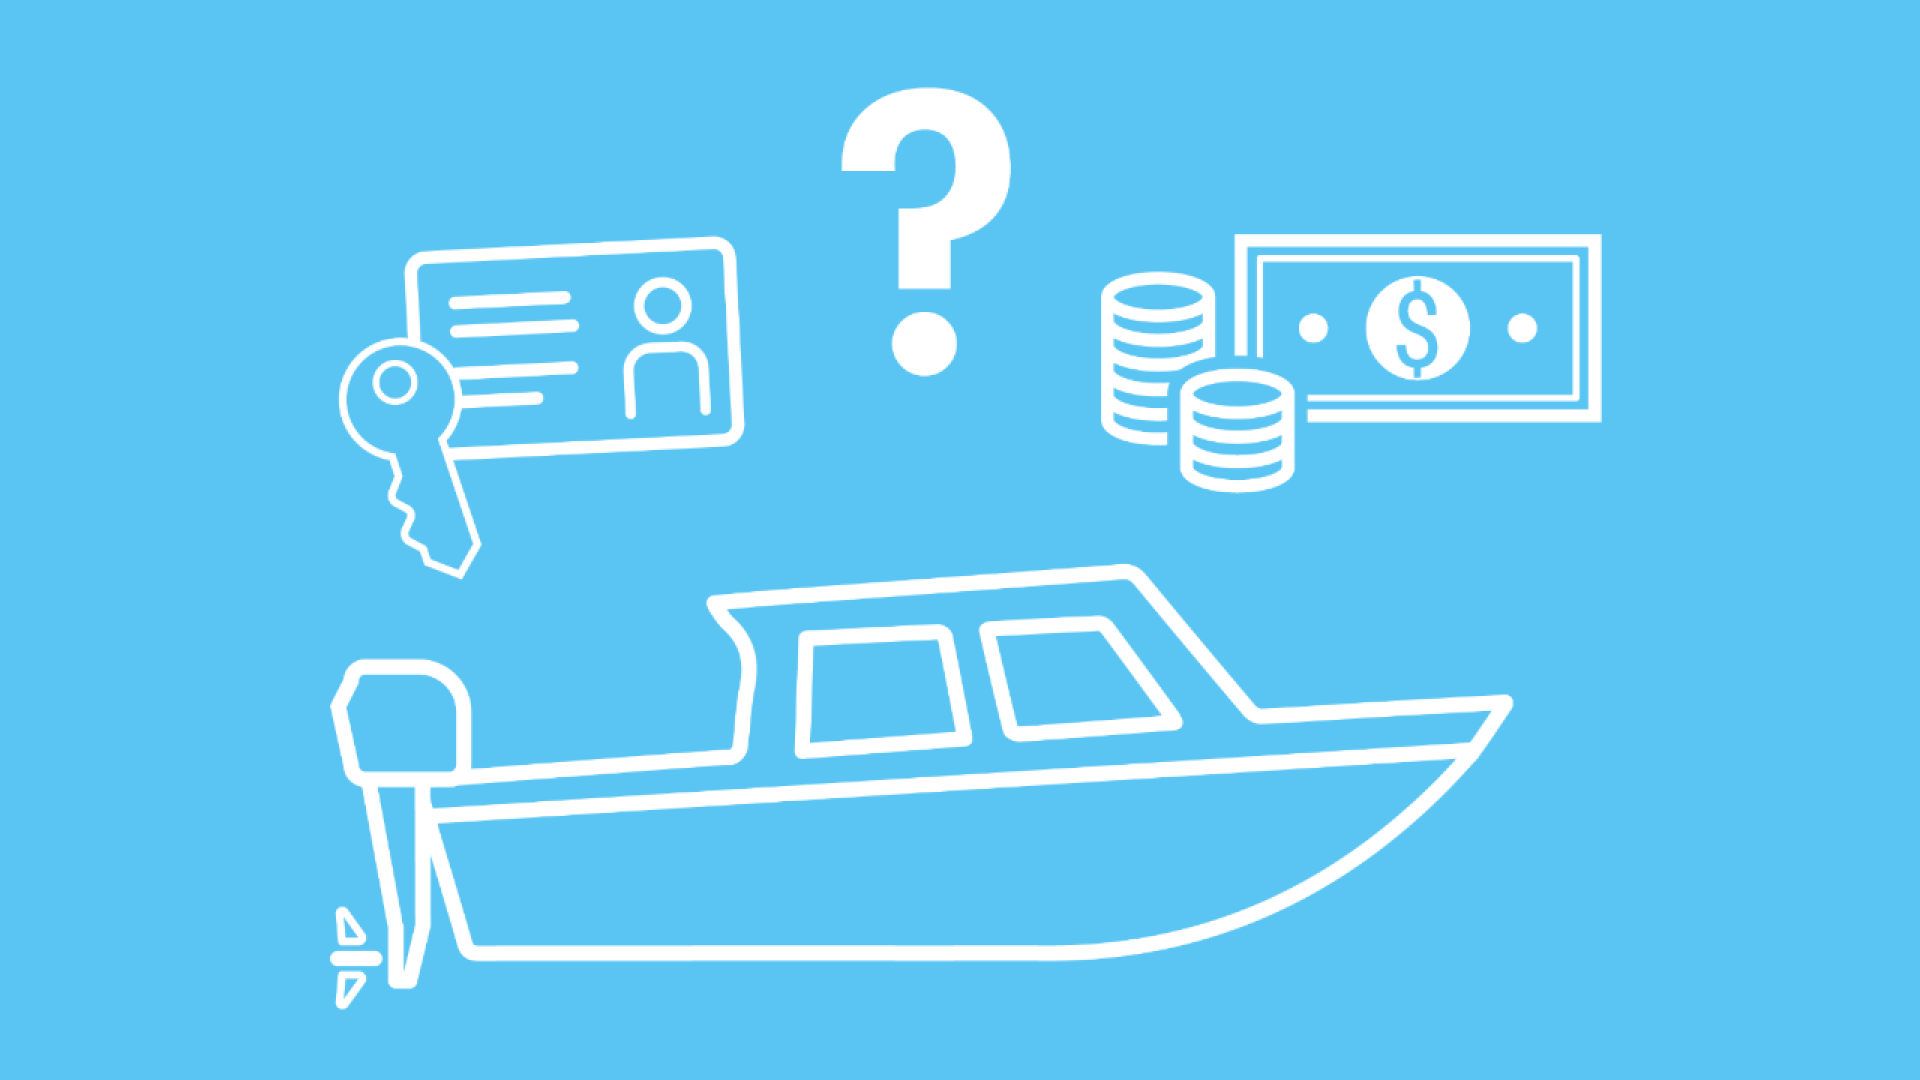 Über einem Motorboot sind ein Bootsführerschein und Geld-Icons zu sehen, die für die Bootsführerschein Kosten stehen.